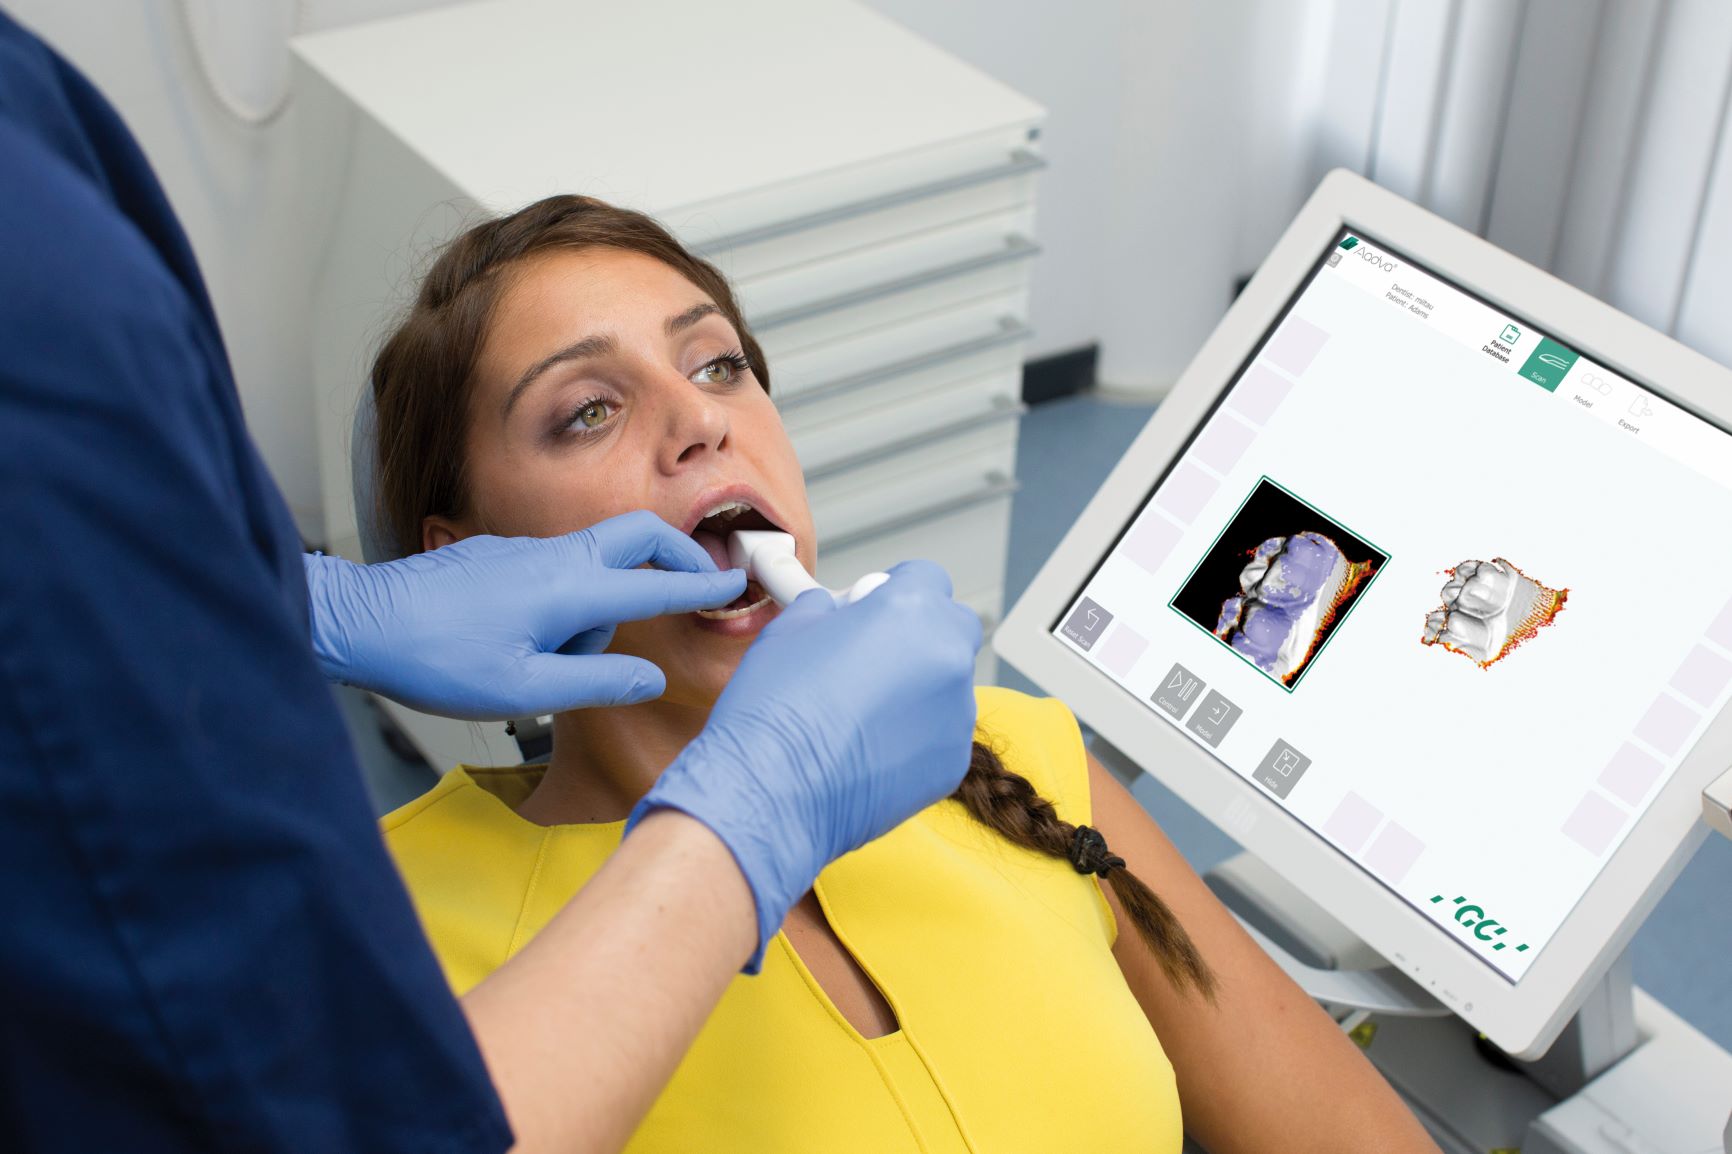 3D Dentalscanner berührungslose Zahnvermessung mittels optischen 3D Scan-Sensor  - AIT Austrian Institute Of Technology